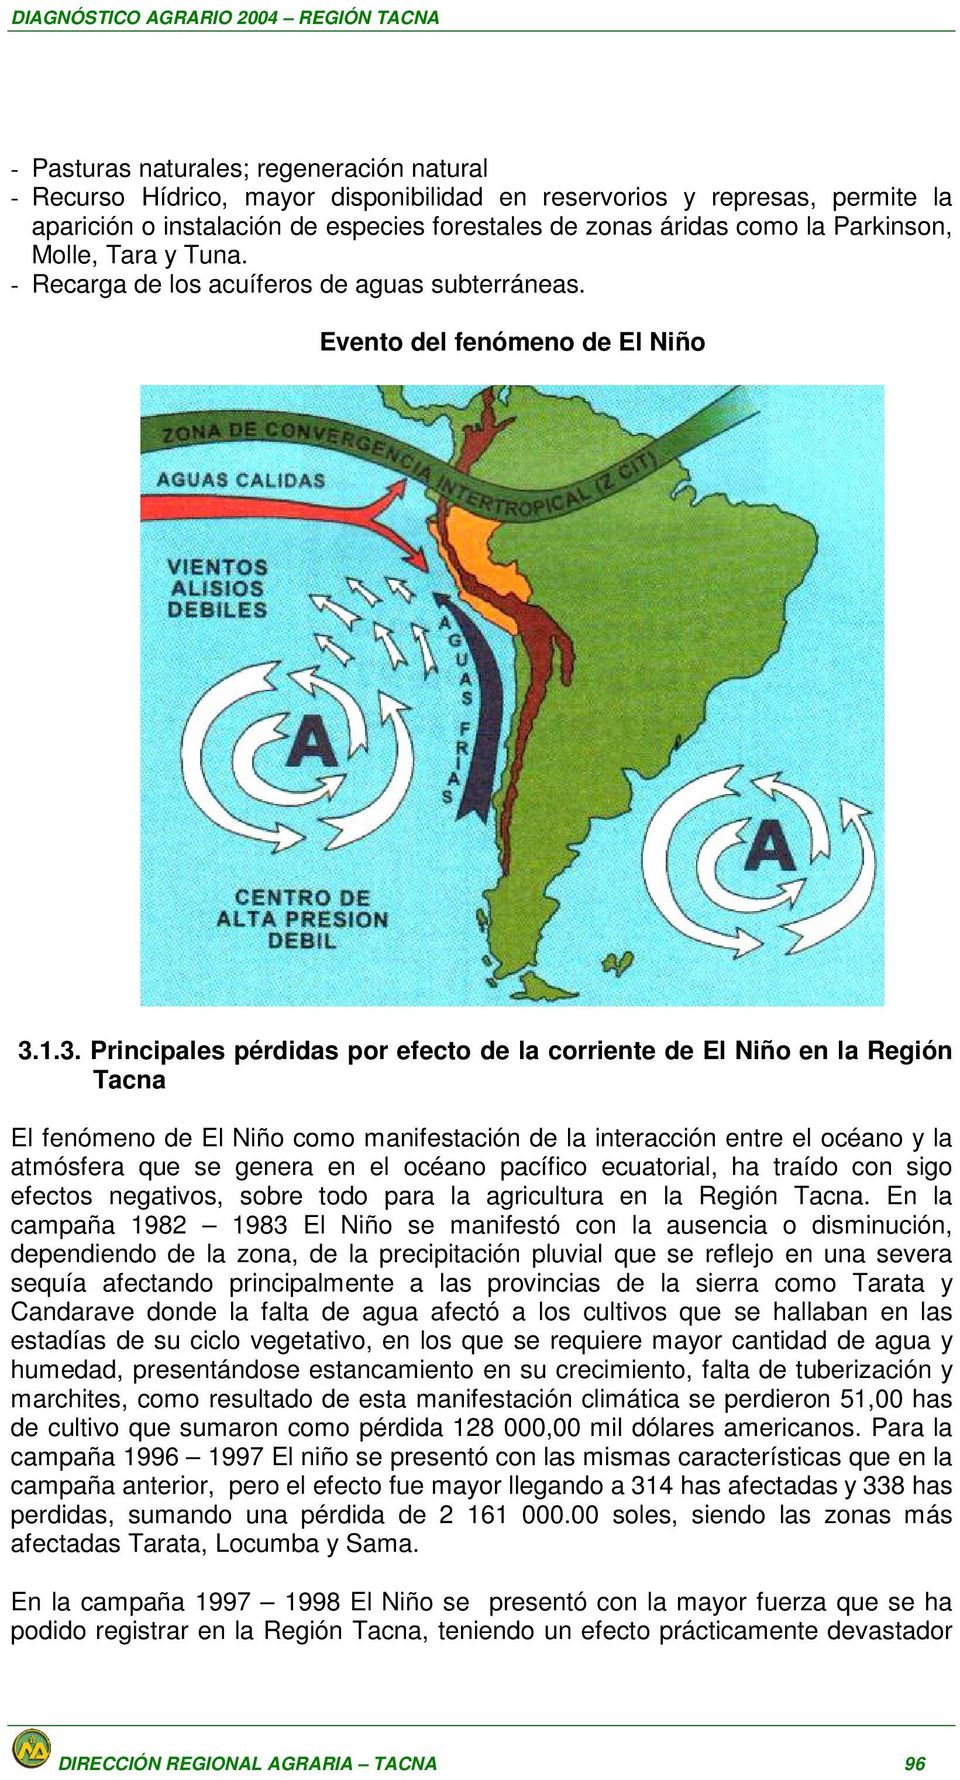 1.3. Principales pérdidas por efecto de la corriente de El Niño en la Región Tacna El fenómeno de El Niño como manifestación de la interacción entre el océano y la atmósfera que se genera en el